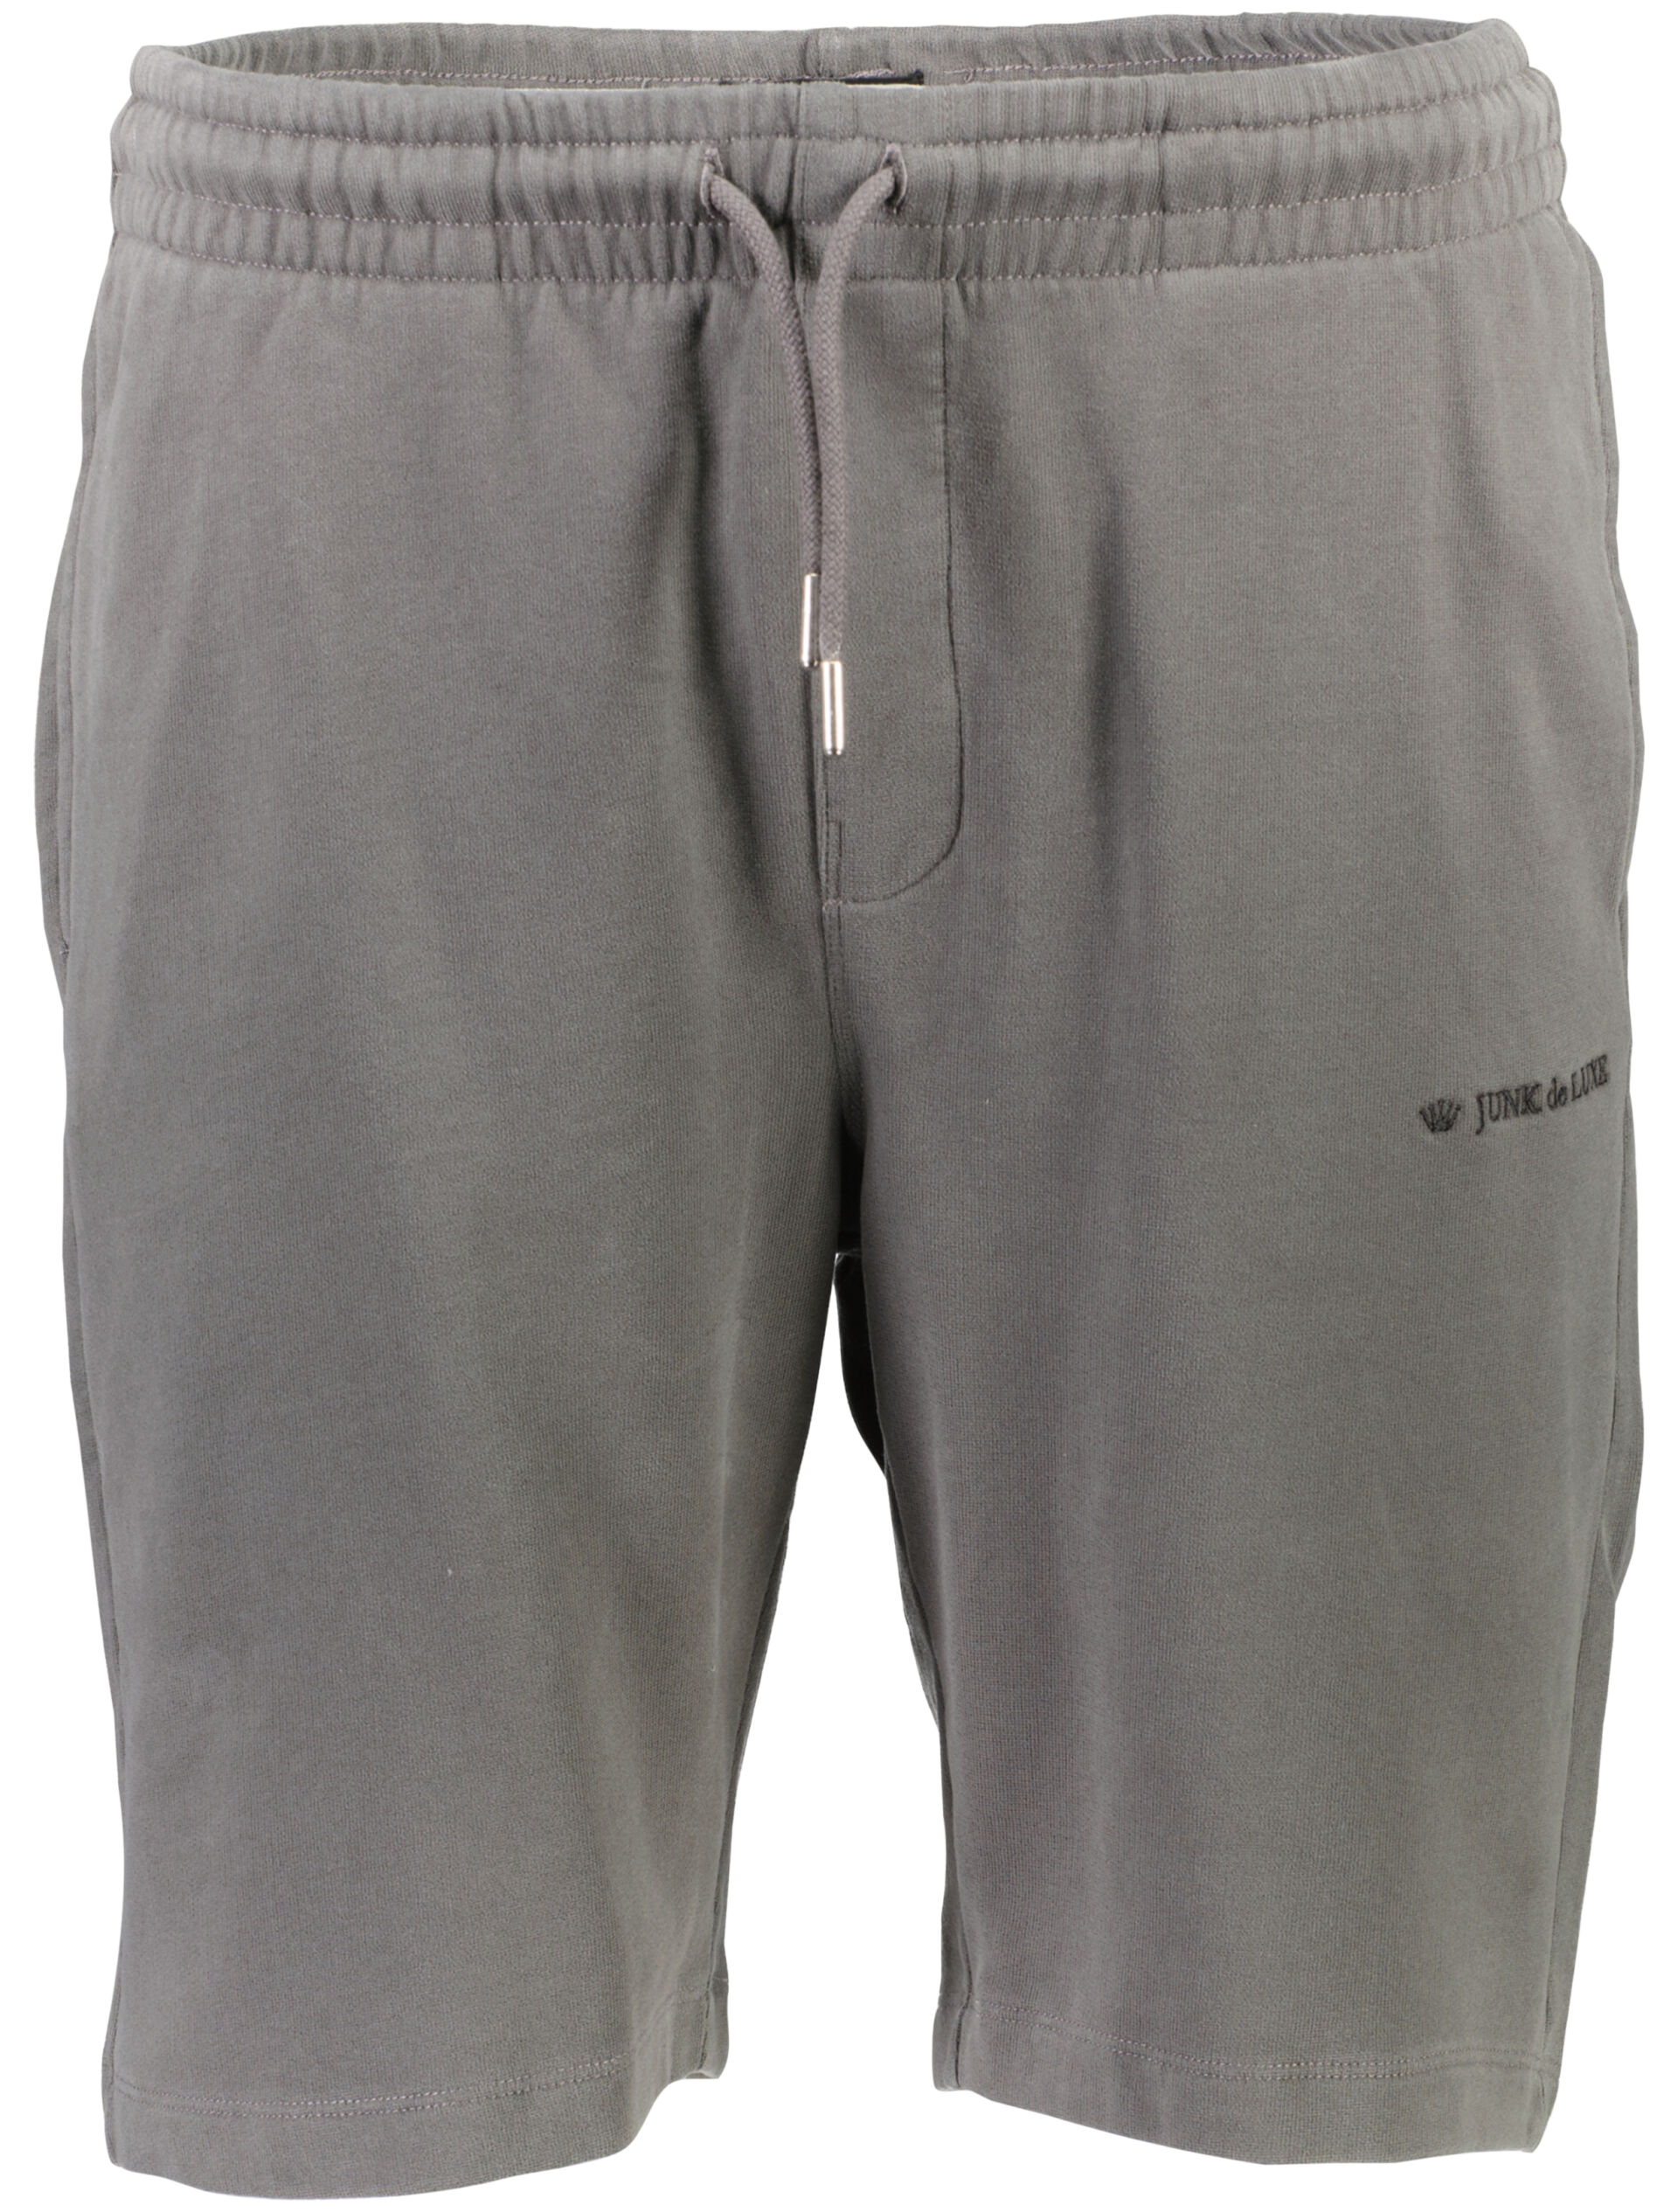 Casual shorts Casual shorts Grey 60-532020